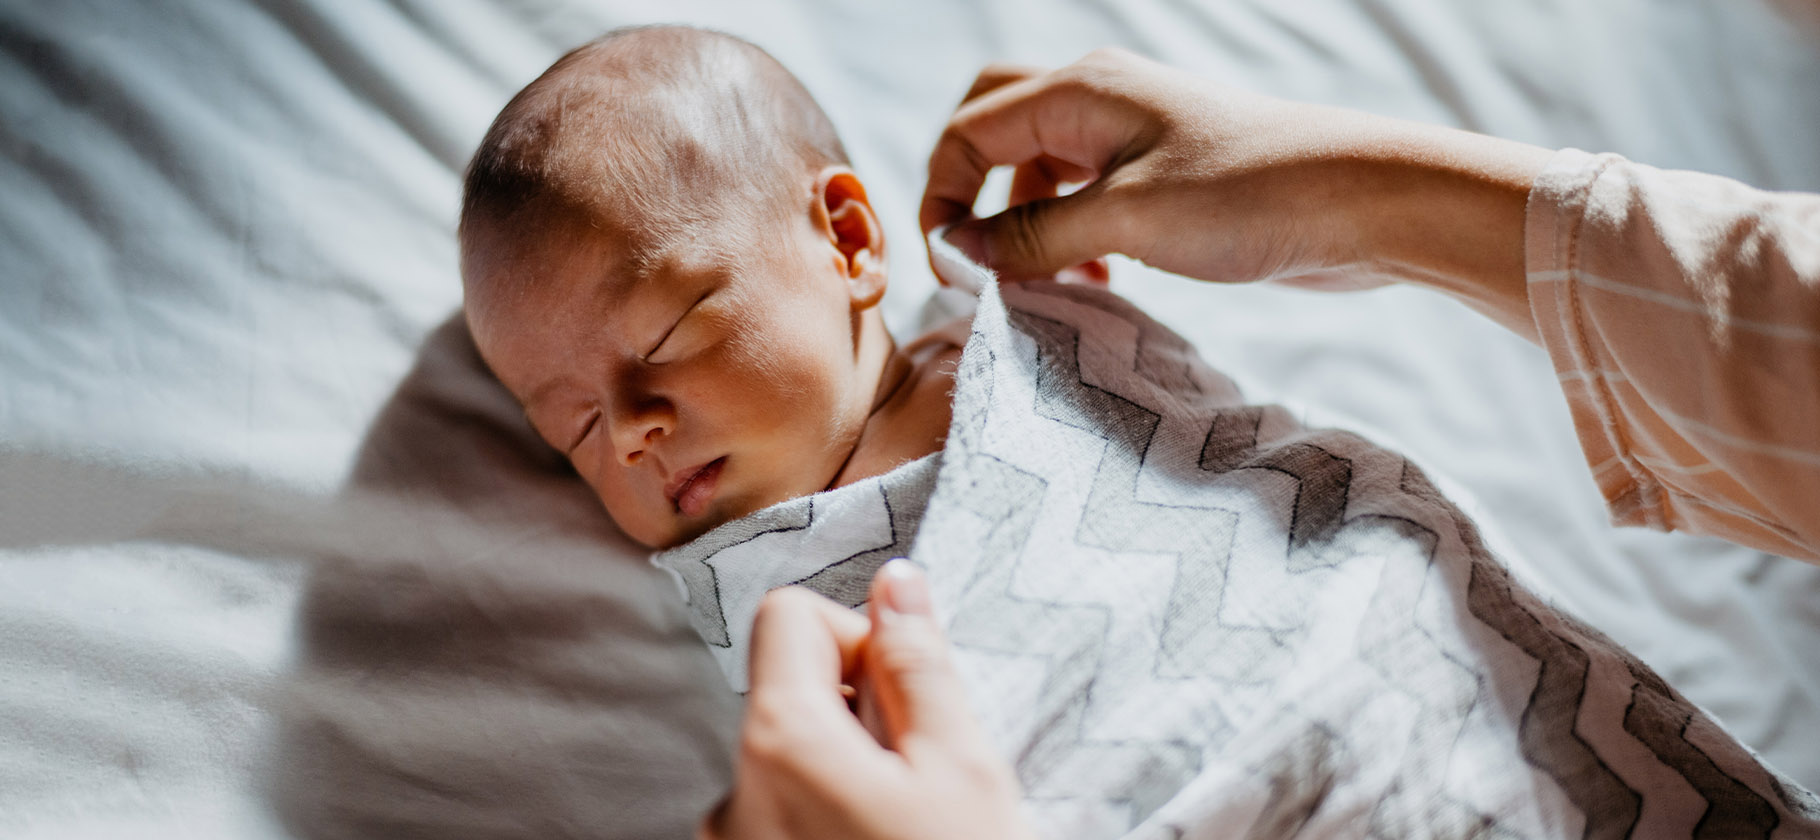 9 частых вопросов педиатру об уходе за новорожденными